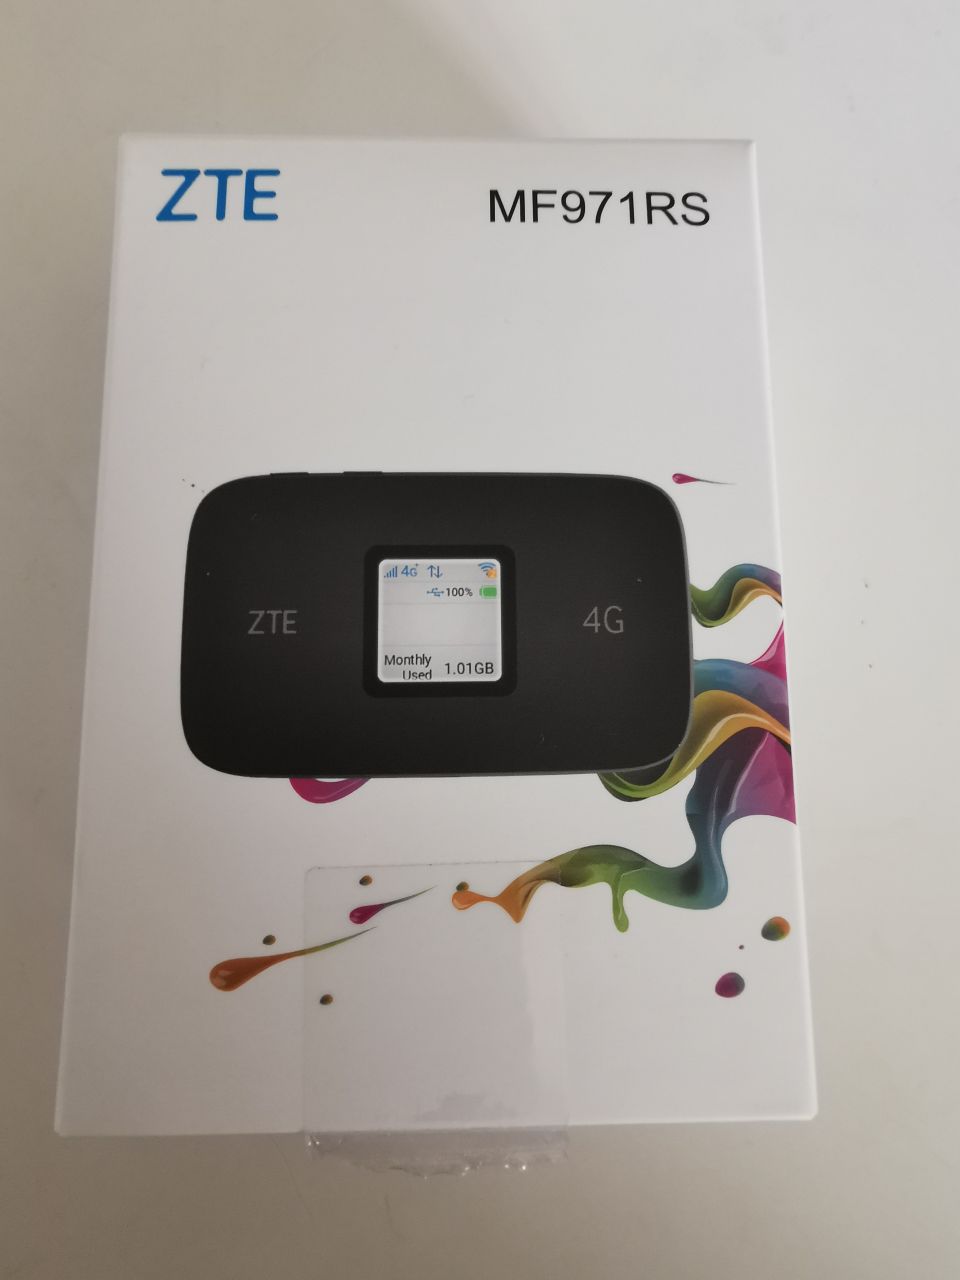 ZTE MF971RS Mobiilireititin